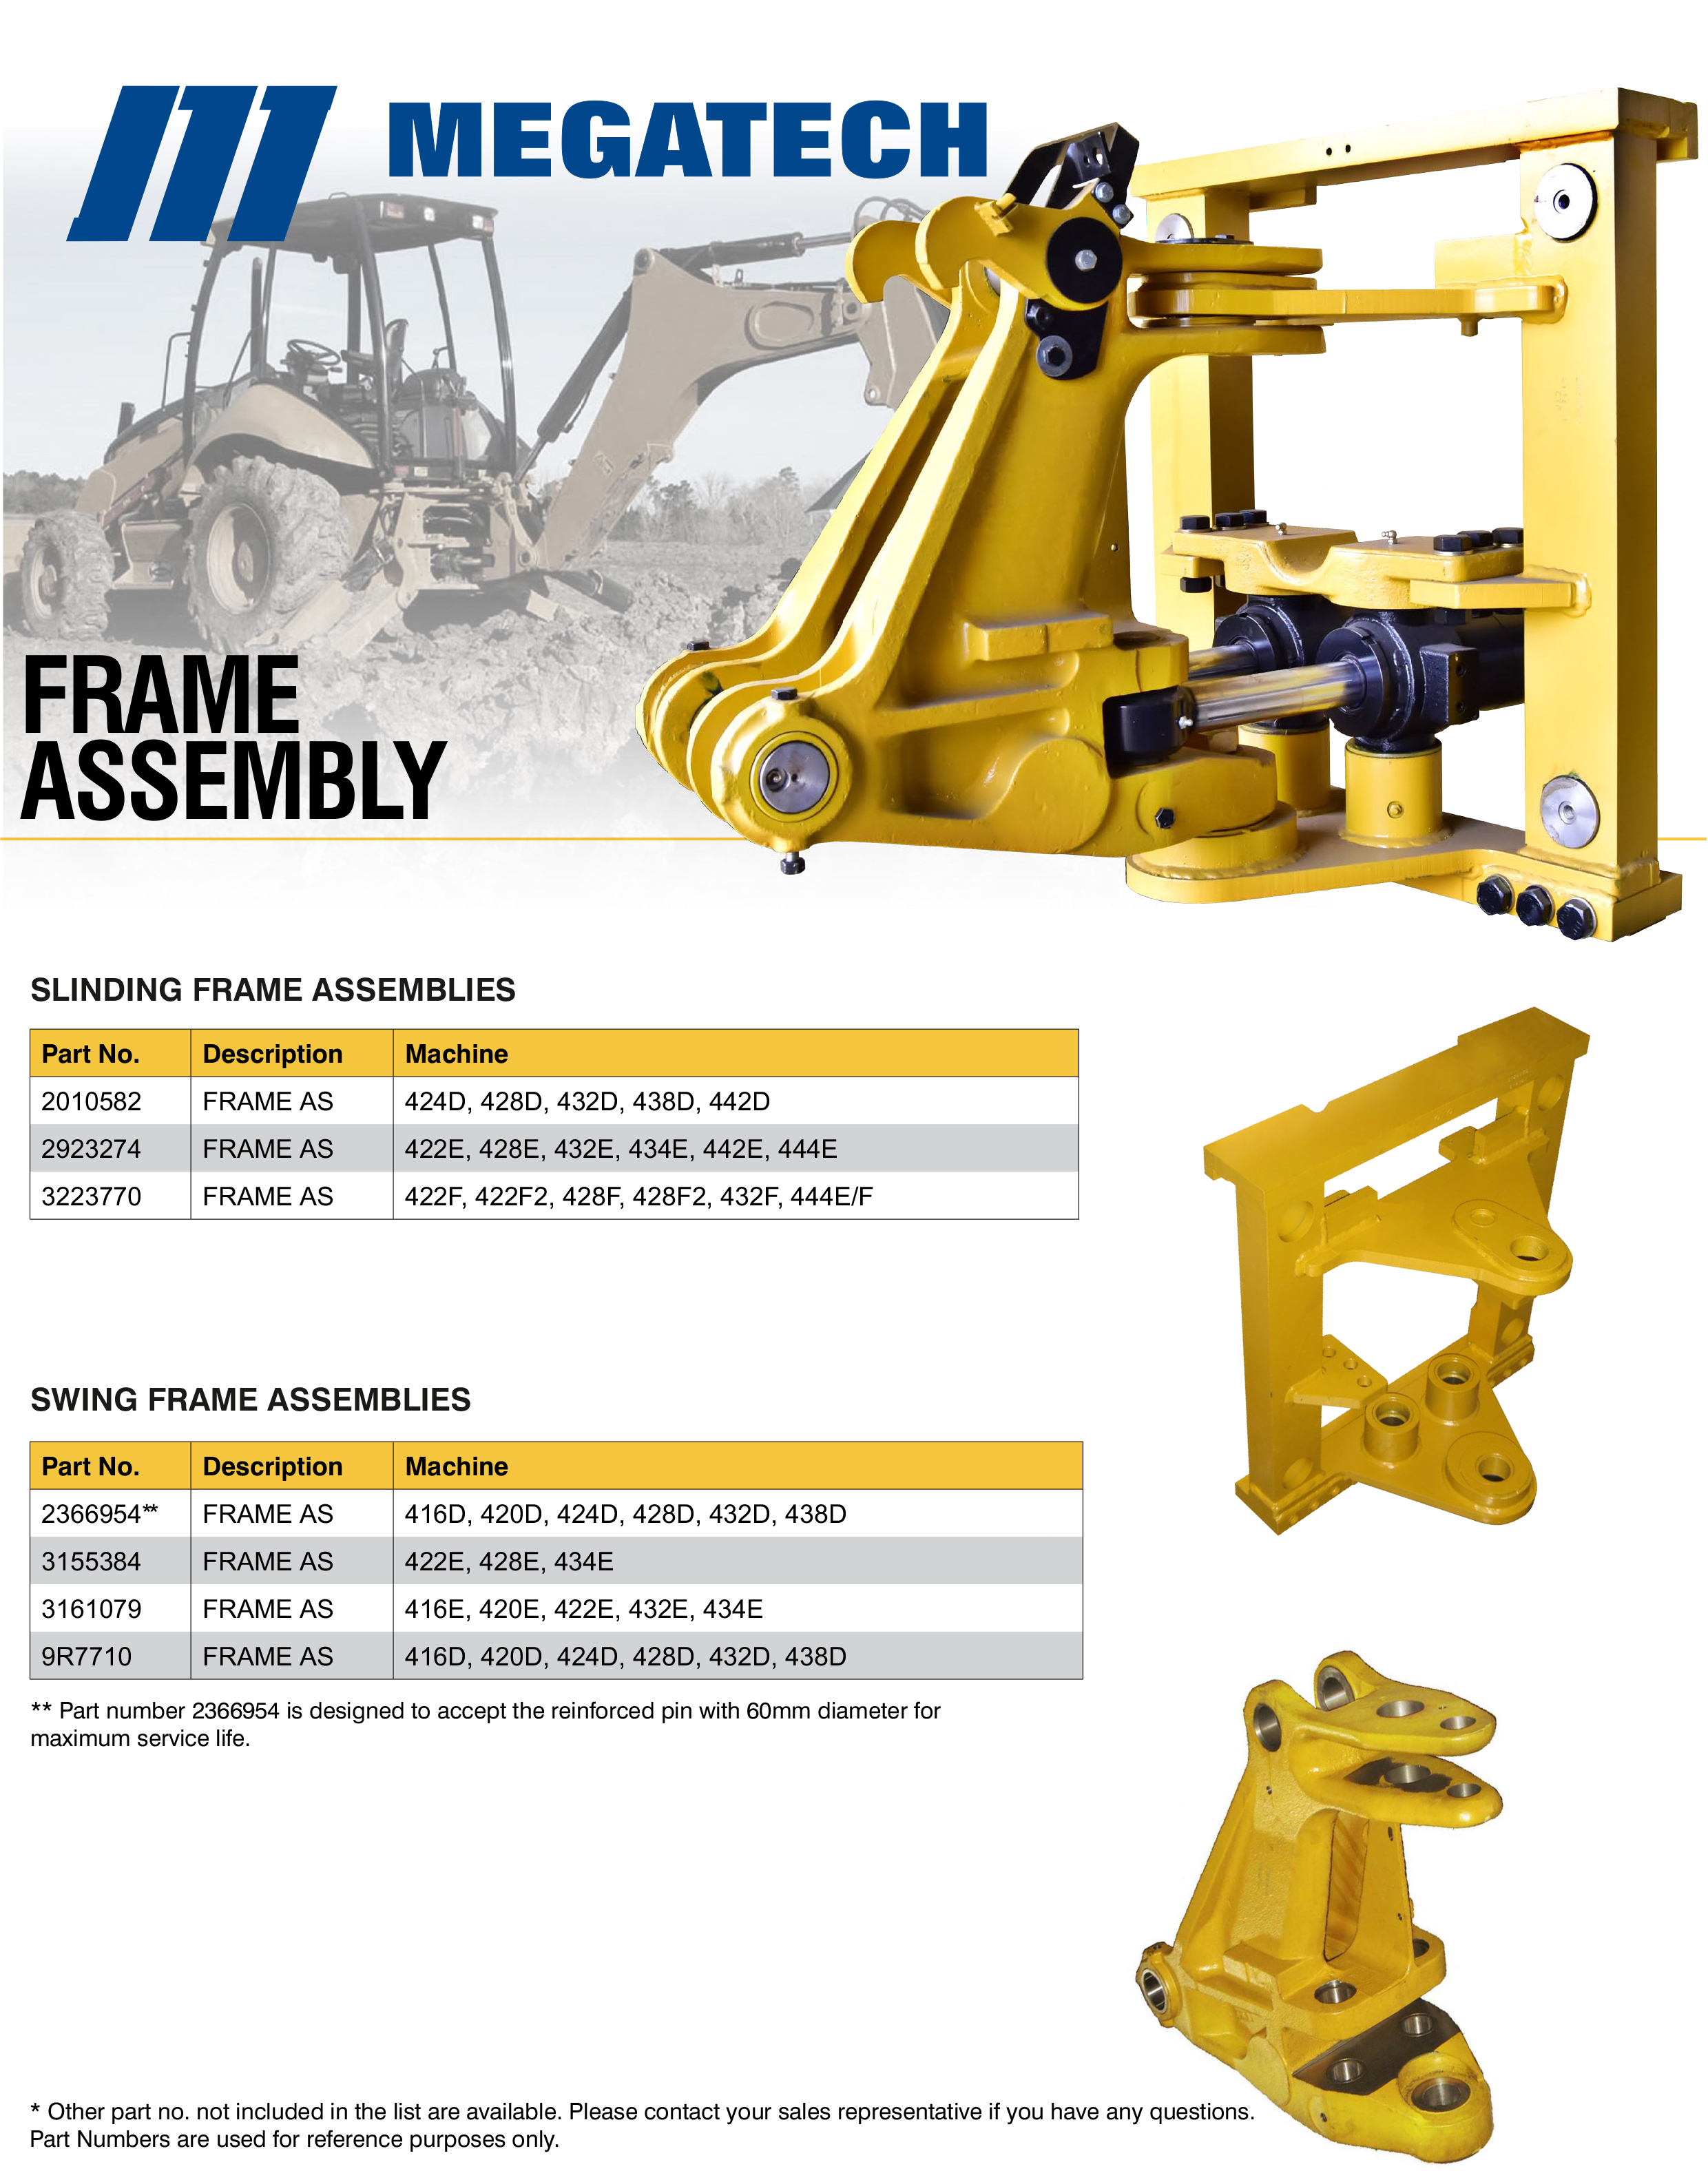 Frame Assembly